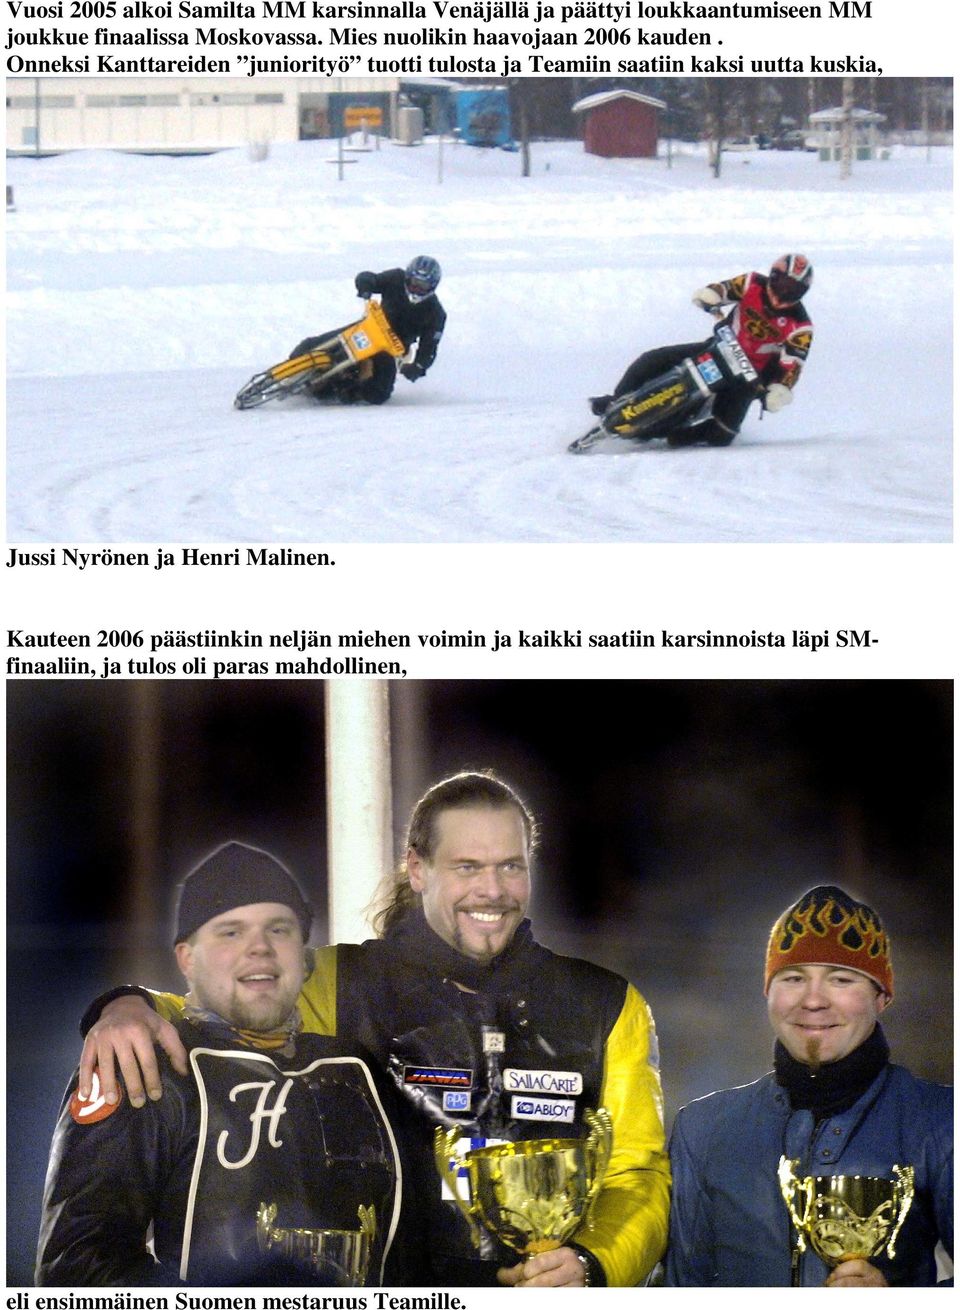 Onneksi Kanttareiden juniorityö tuotti tulosta ja Teamiin saatiin kaksi uutta kuskia, Jussi Nyrönen ja Henri